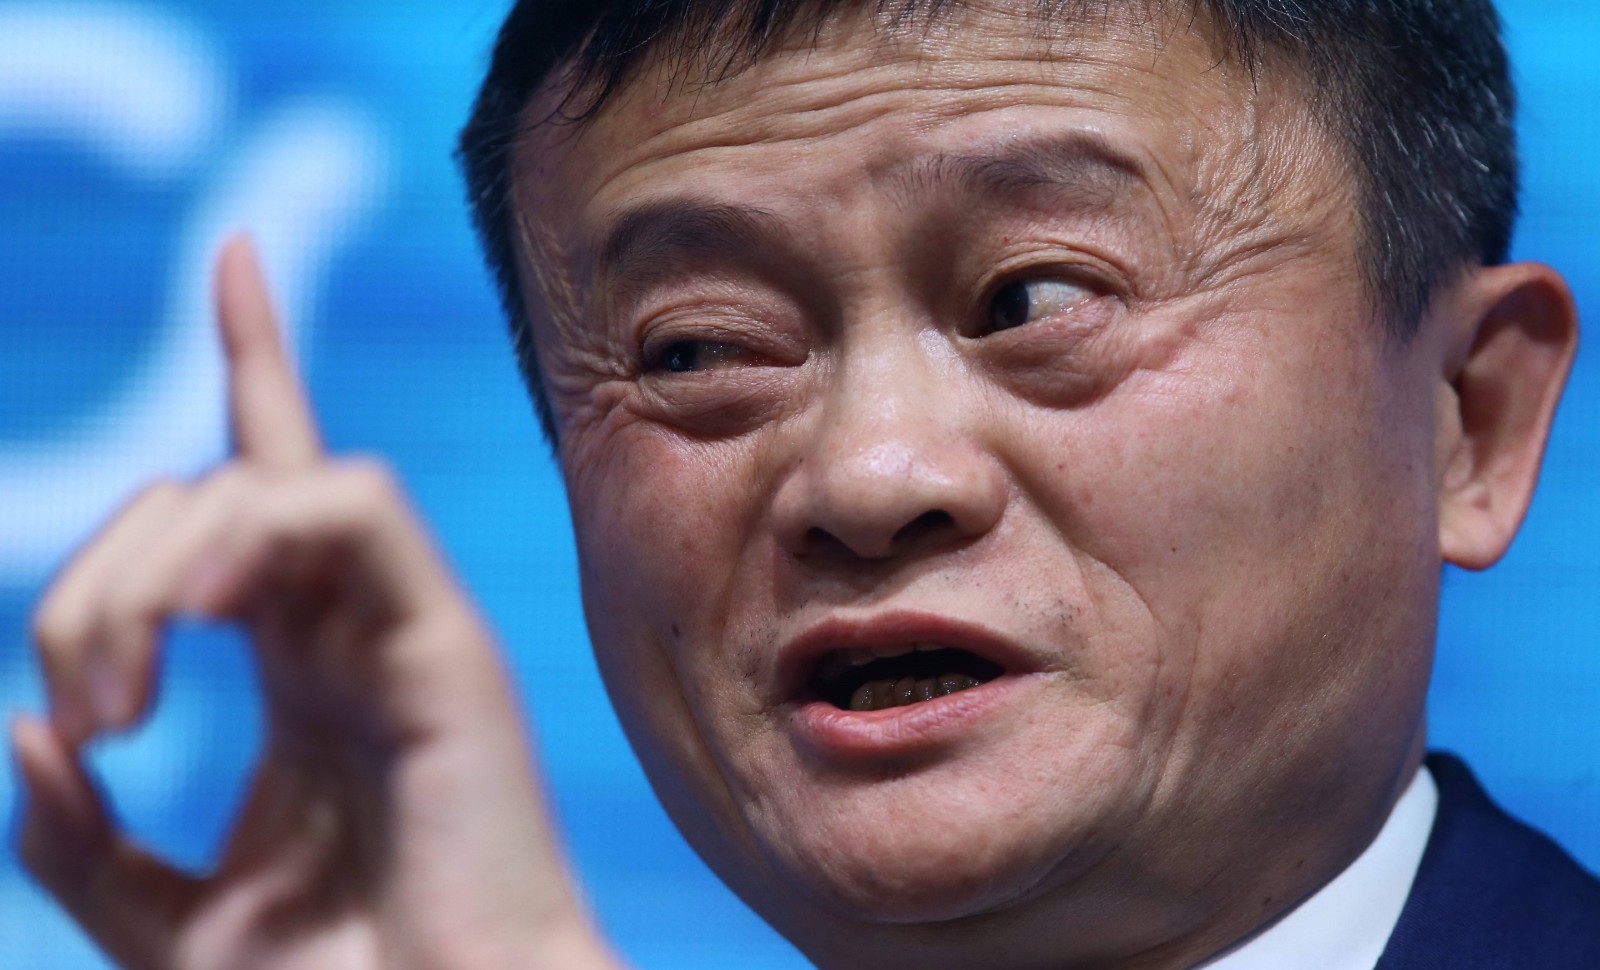 Disparition de Jack Ma (Alibaba): enfin une bonne nouvelle pour l’Occident!